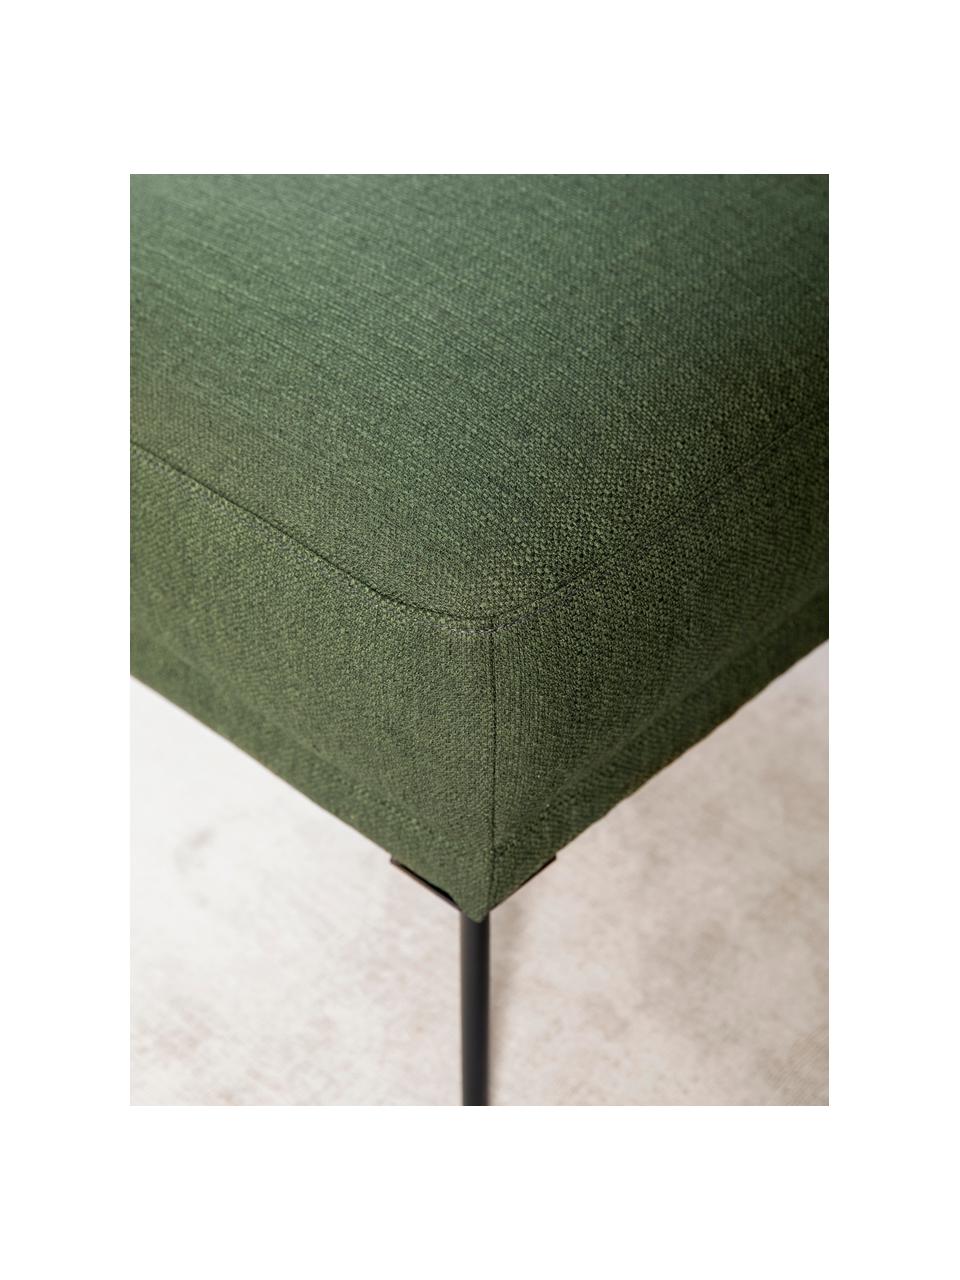 Tabouret/repose-pieds vert foncé avec pieds en métal Fluente, Tissu vert foncé, larg. 62 x haut. 46 cm